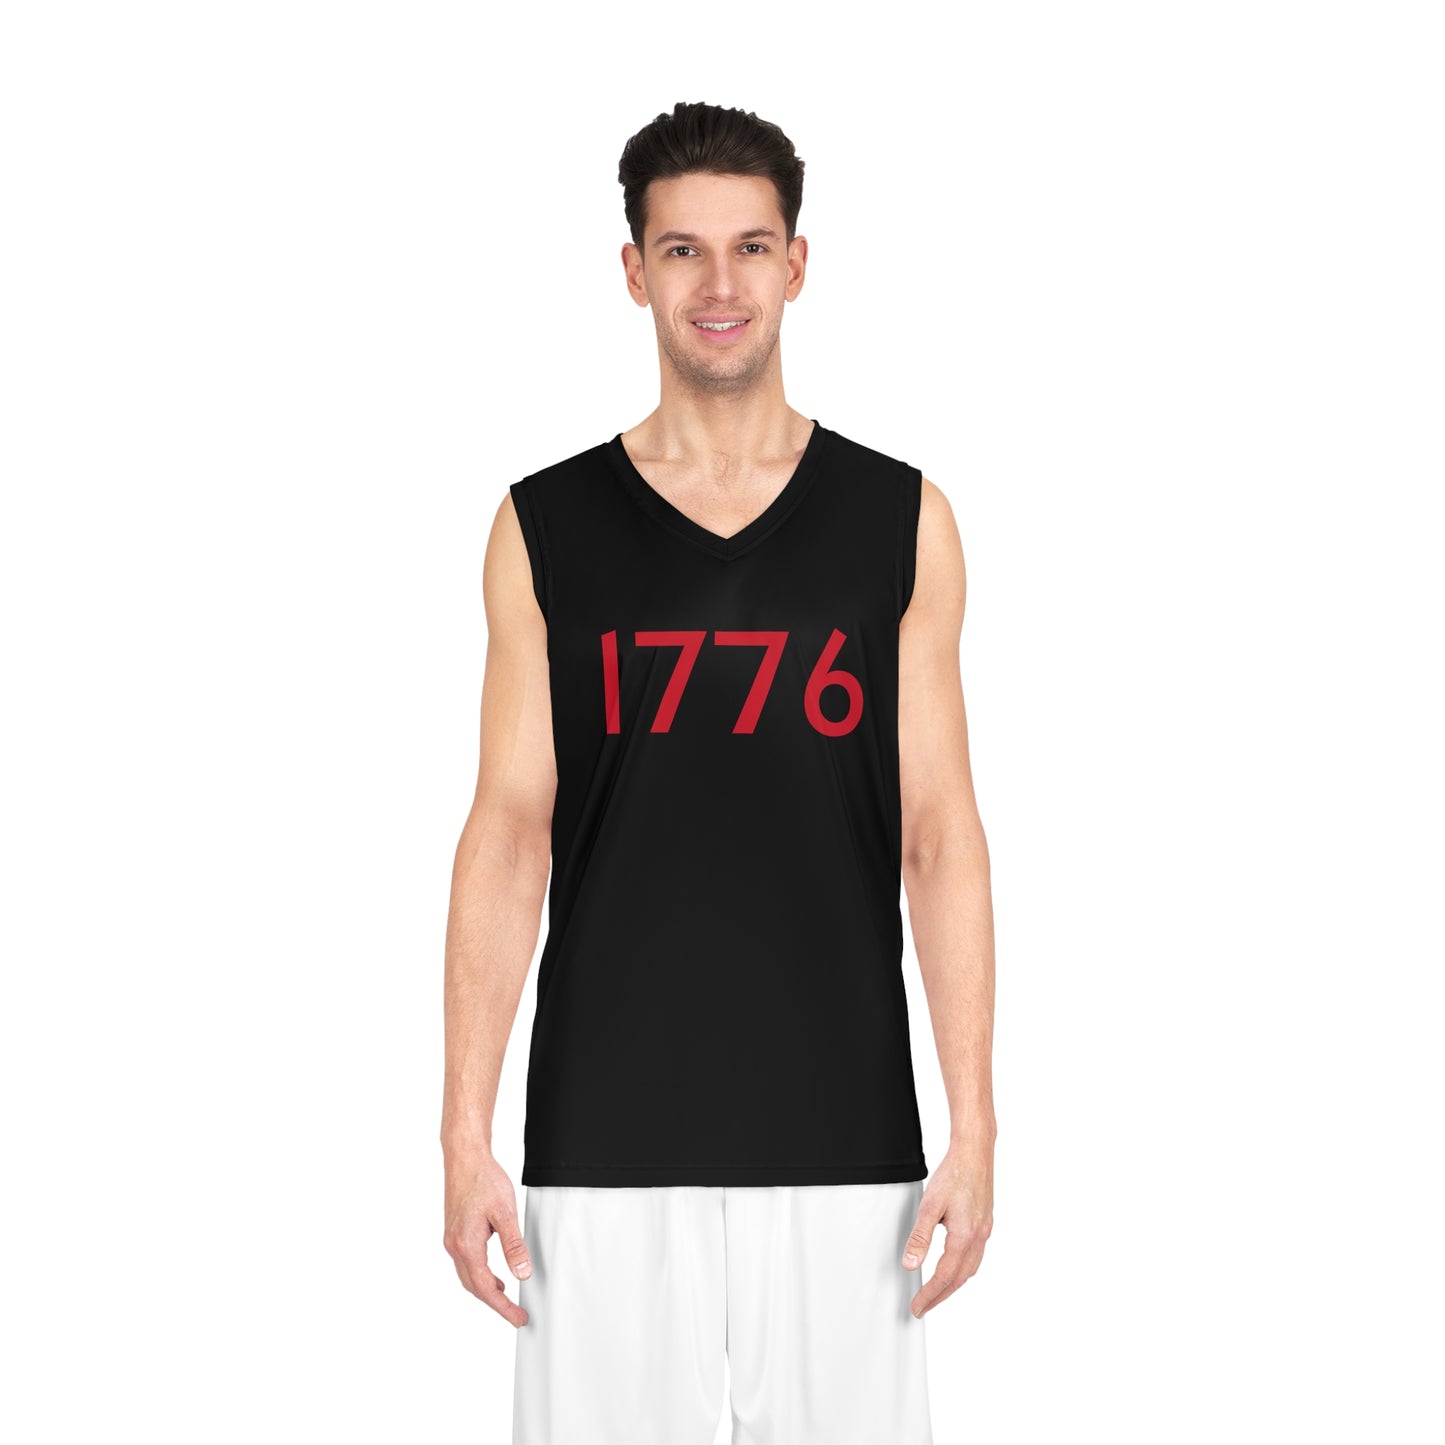 1776 Basketball Jersey